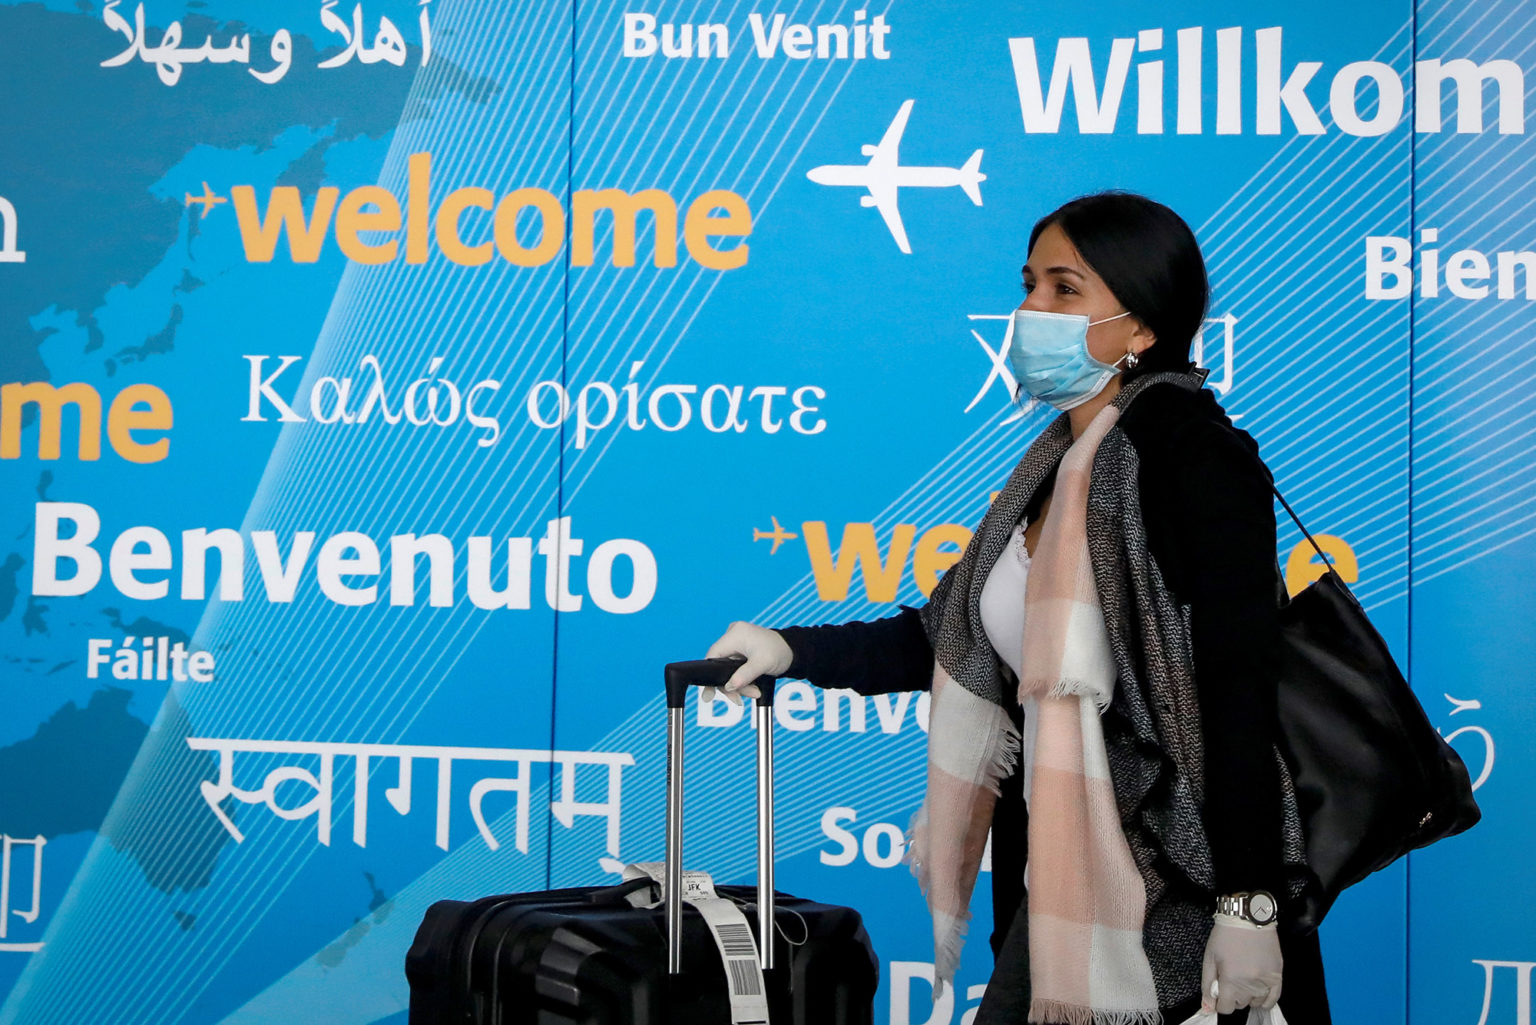 Europa eliminará obrigatoriedade de máscaras durante viagens aéreas na próxima semana